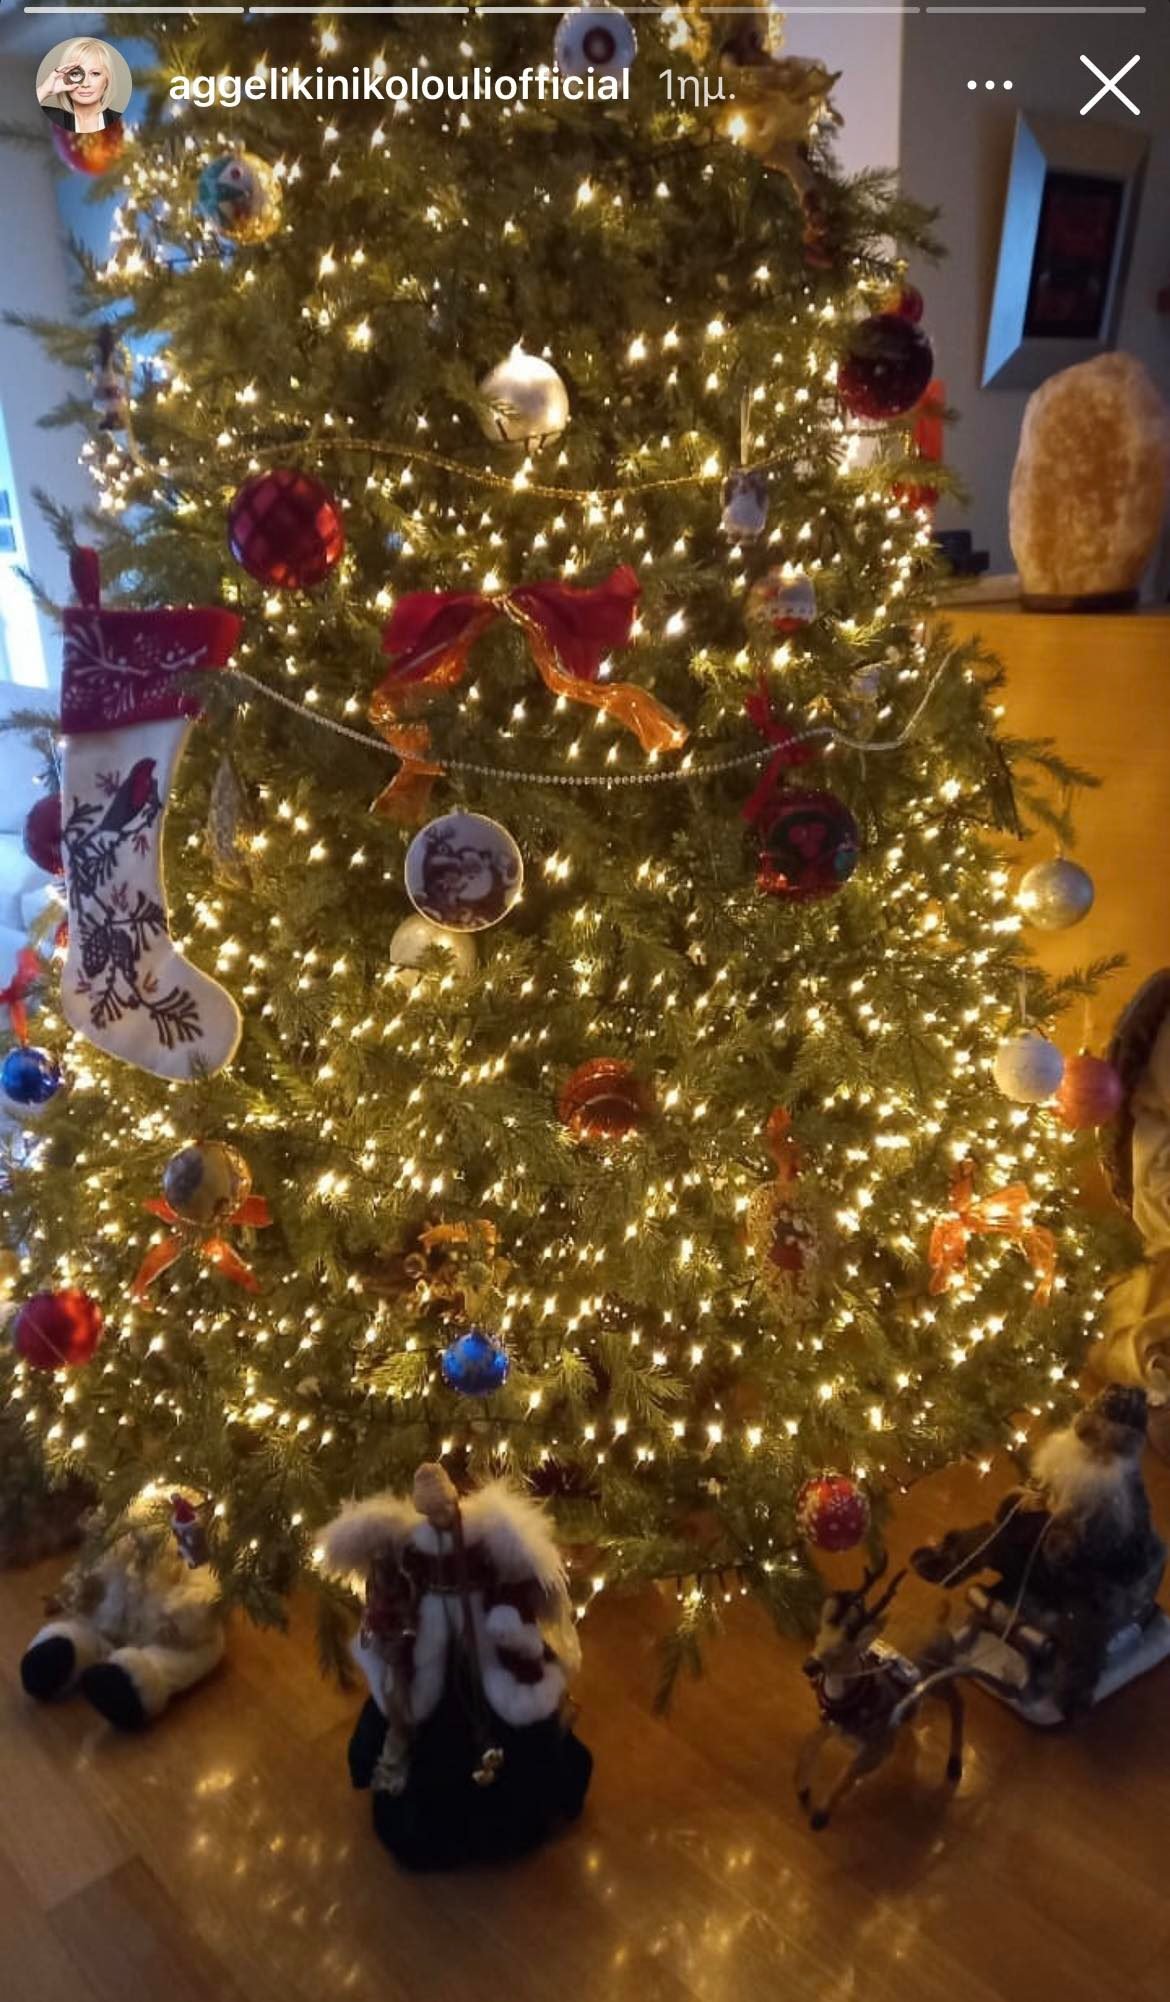 Αγγελική Νικολούλη: Μας βάζει στο σπίτι της και μας δείχνει το υπέροχο χριστουγεννιάτικο δέντρο που στόλισε